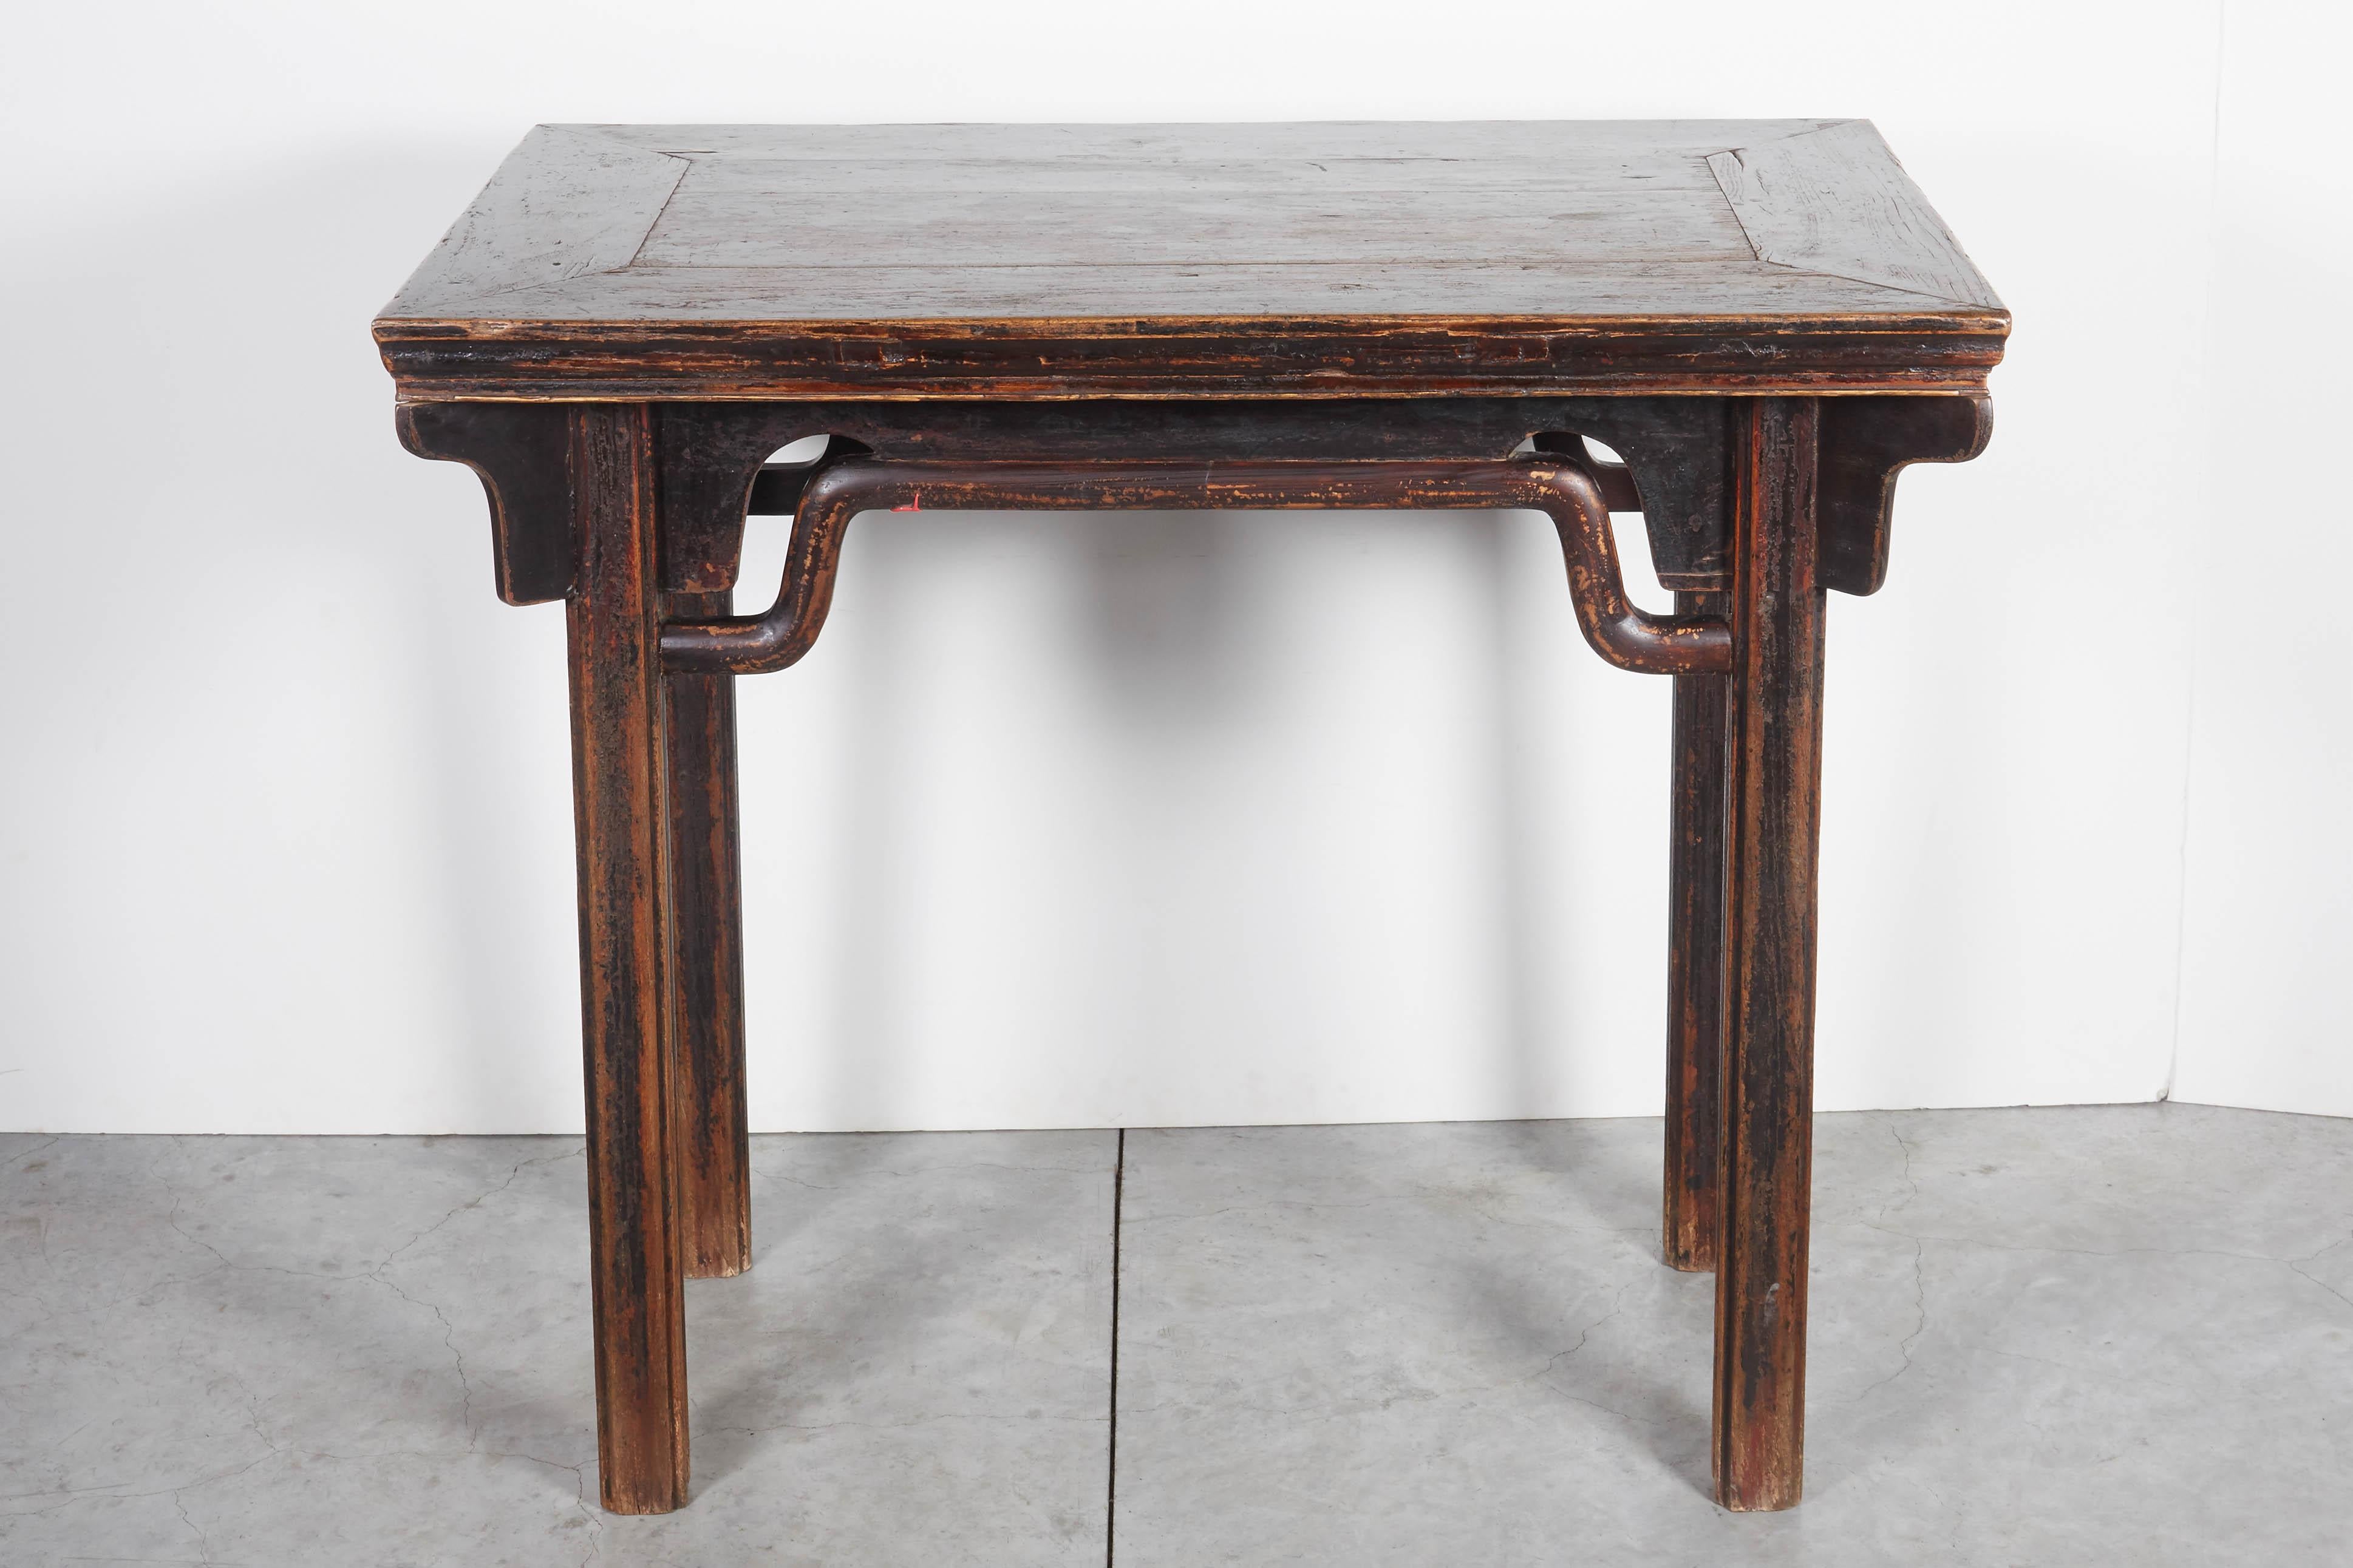 Une table à vin chinoise ancienne, classique et gracieuse, avec des traverses en dos d'âne distinctives et une belle patine. Cette table aurait probablement été utilisée comme autel dans une maison chinoise du XIXe siècle.
T559.